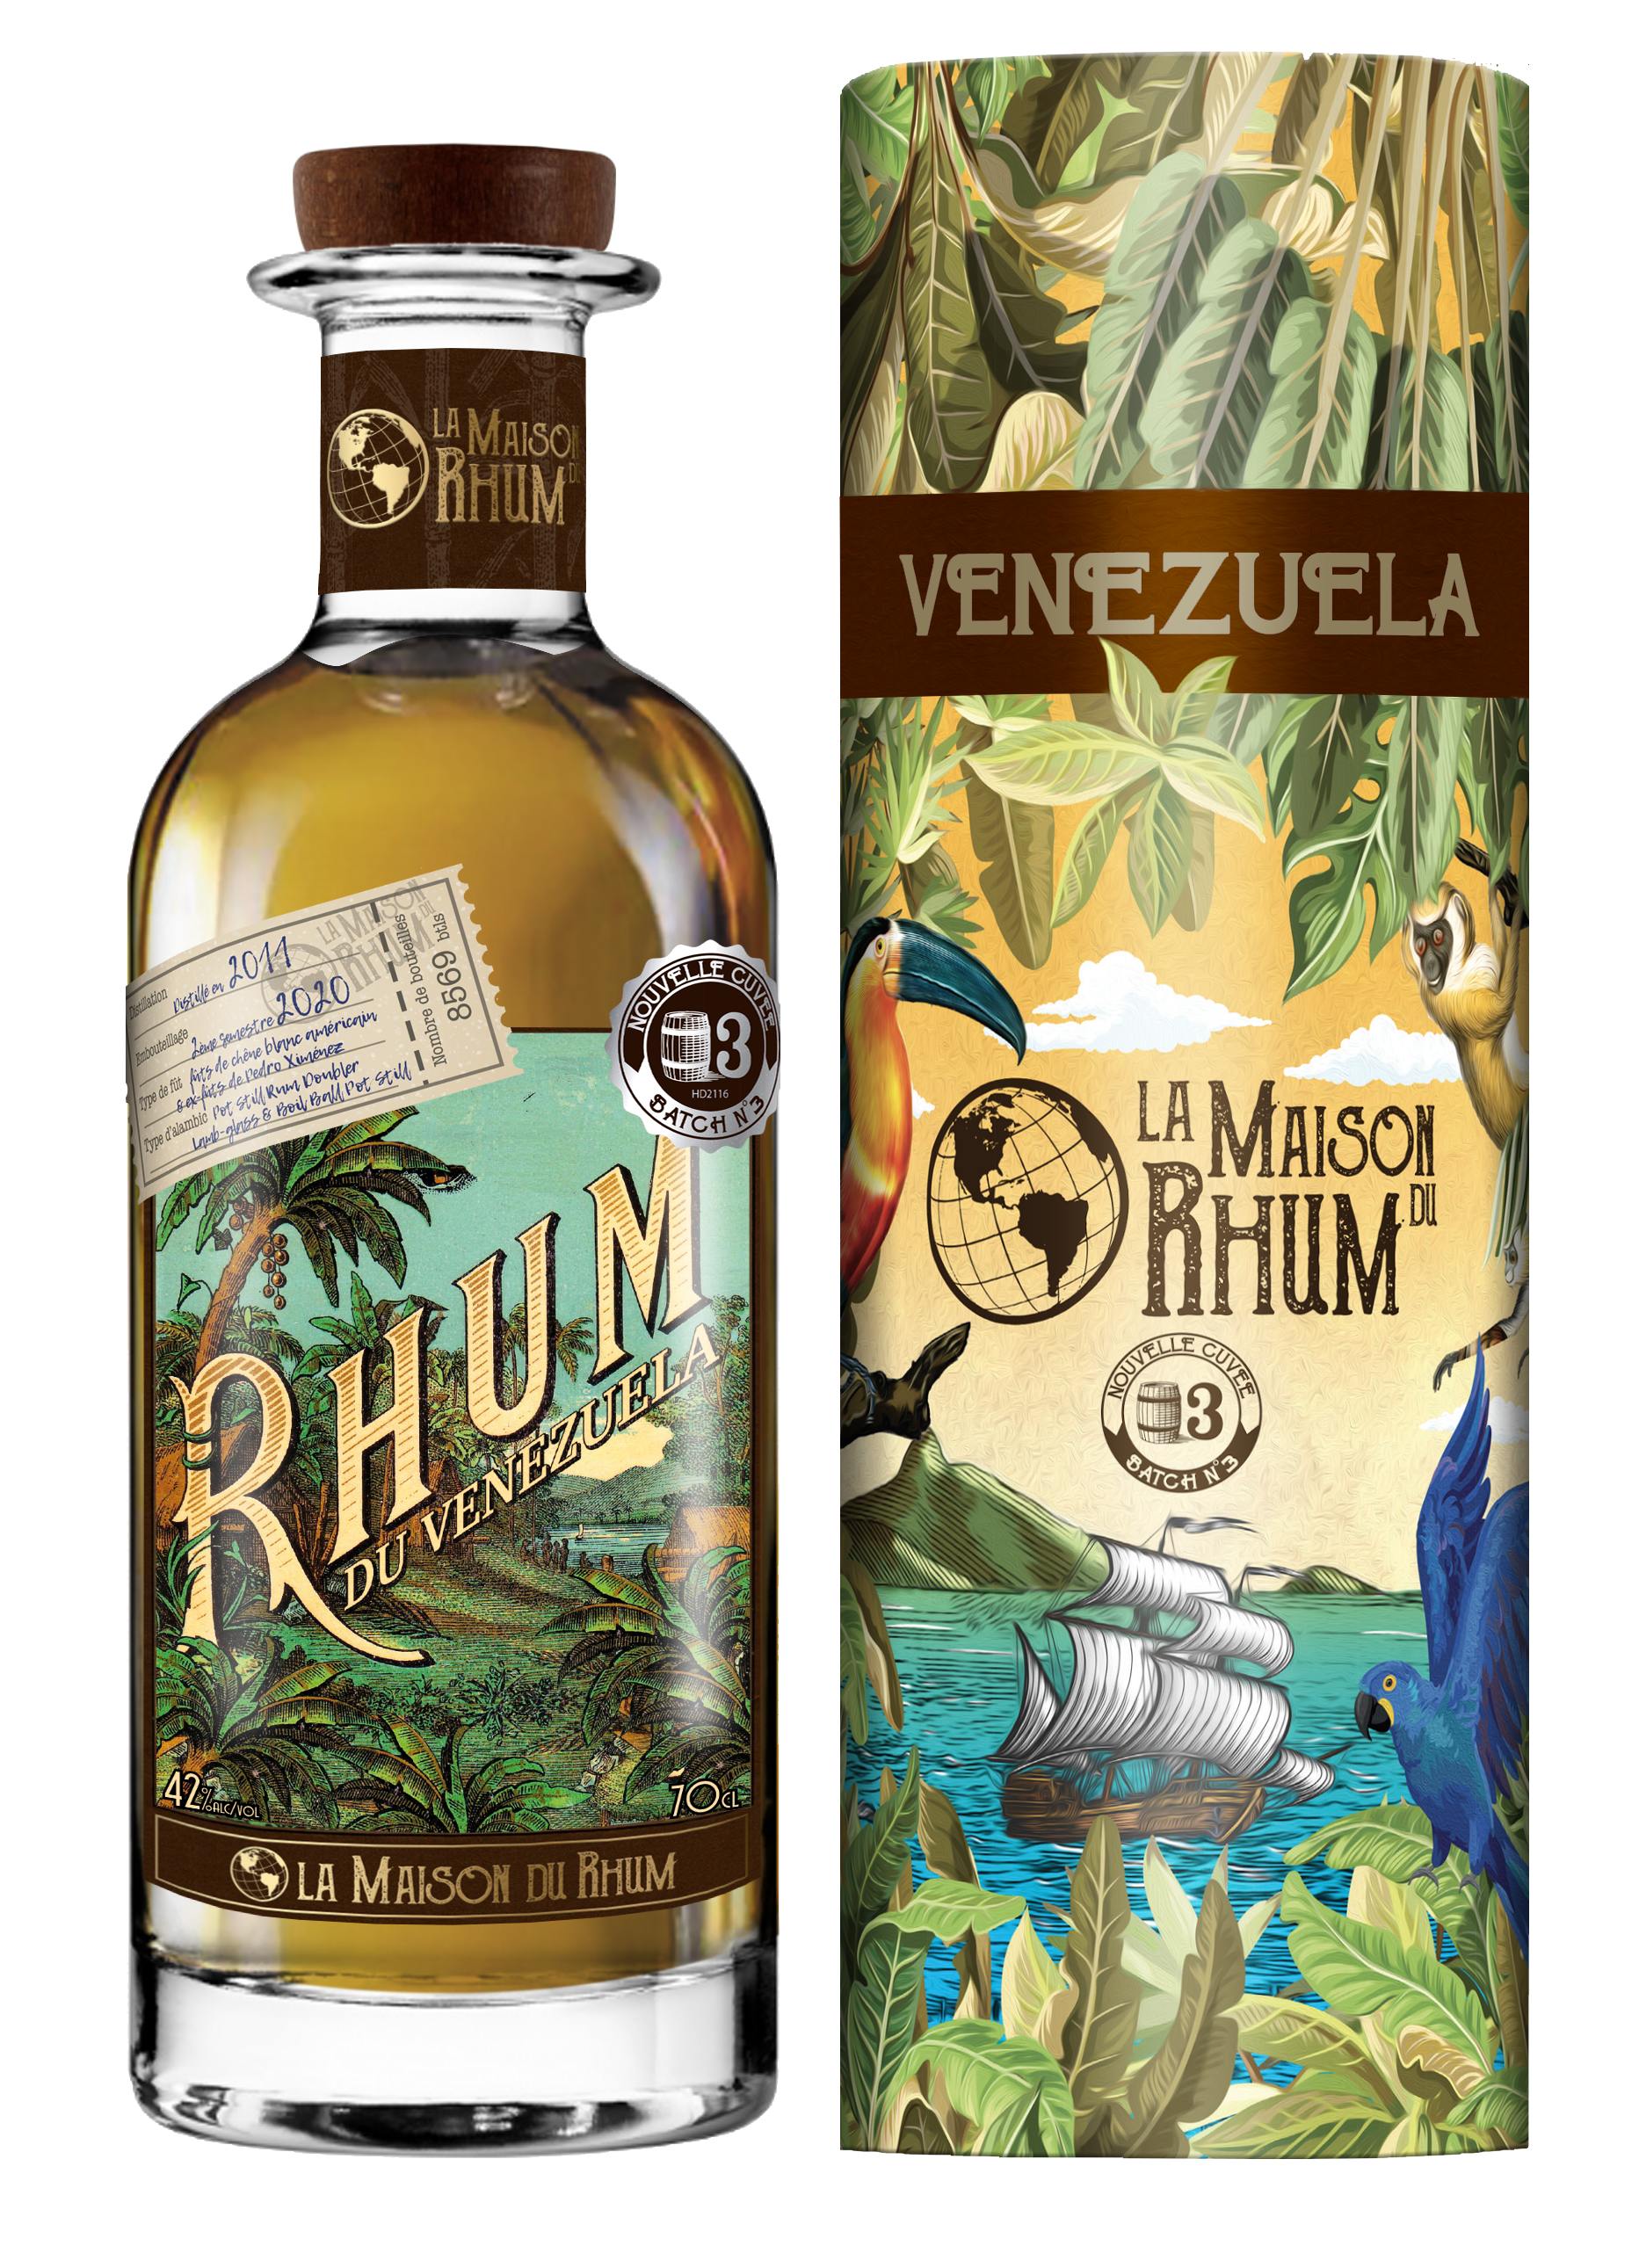 Flasche und Geschenkverpackung La Maison du Rhum Venezuela